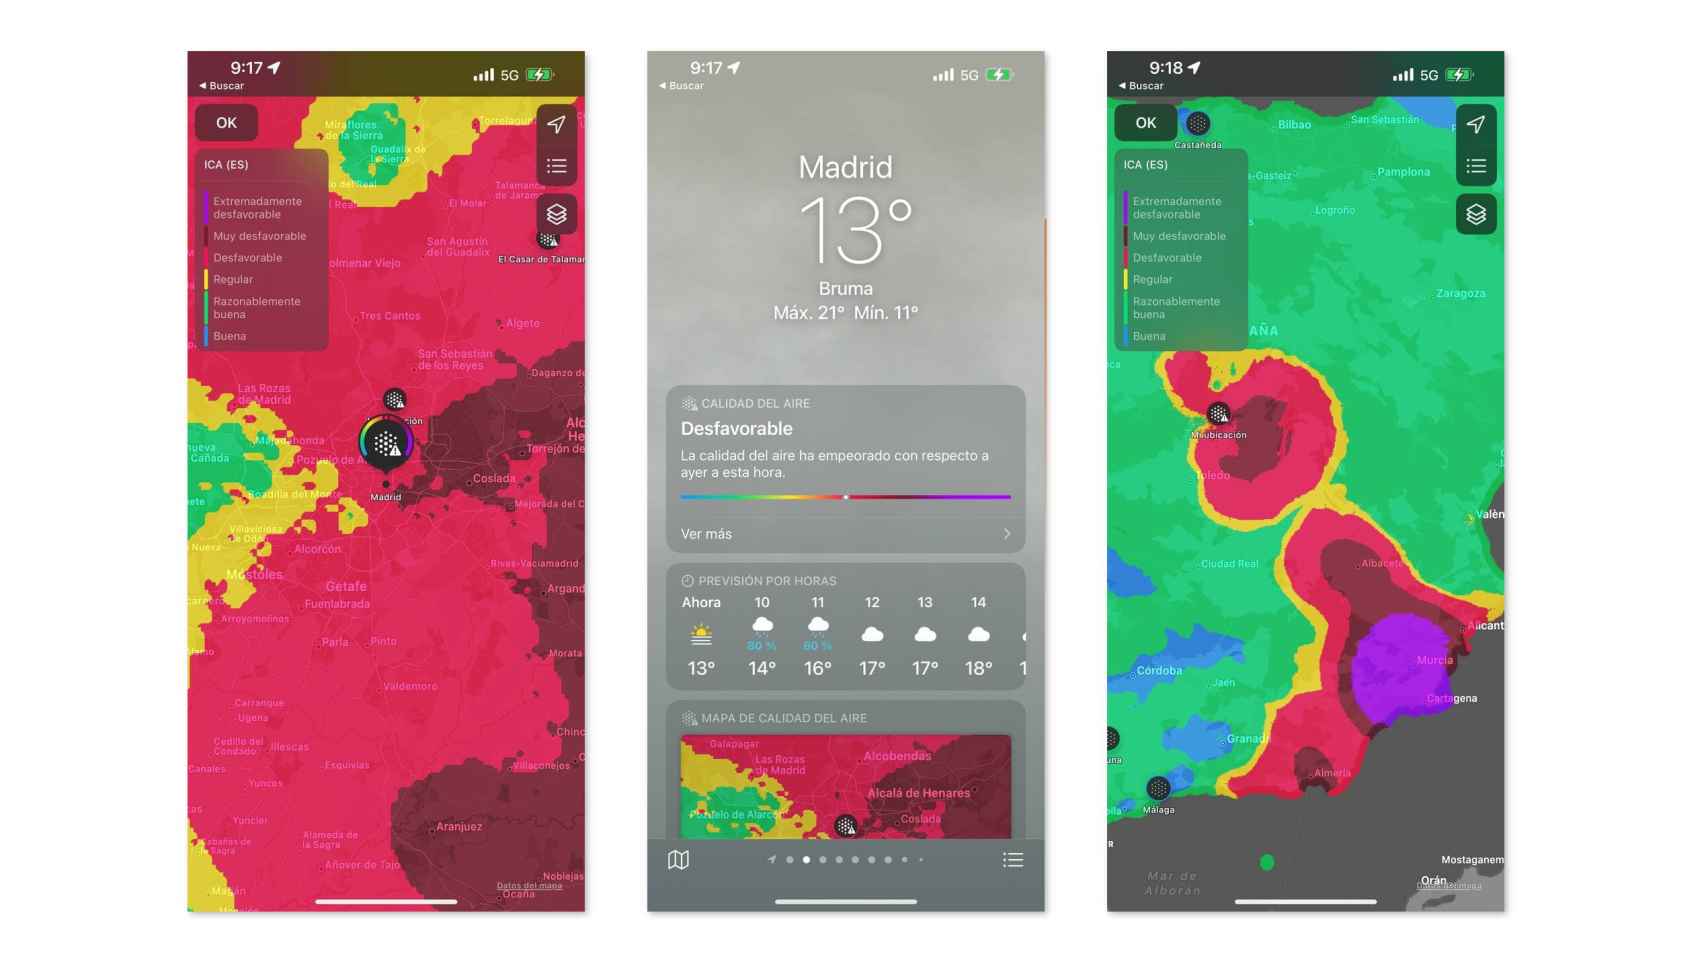 Los mapas interactivos sobre la calidad del aire con la borrasca Celia